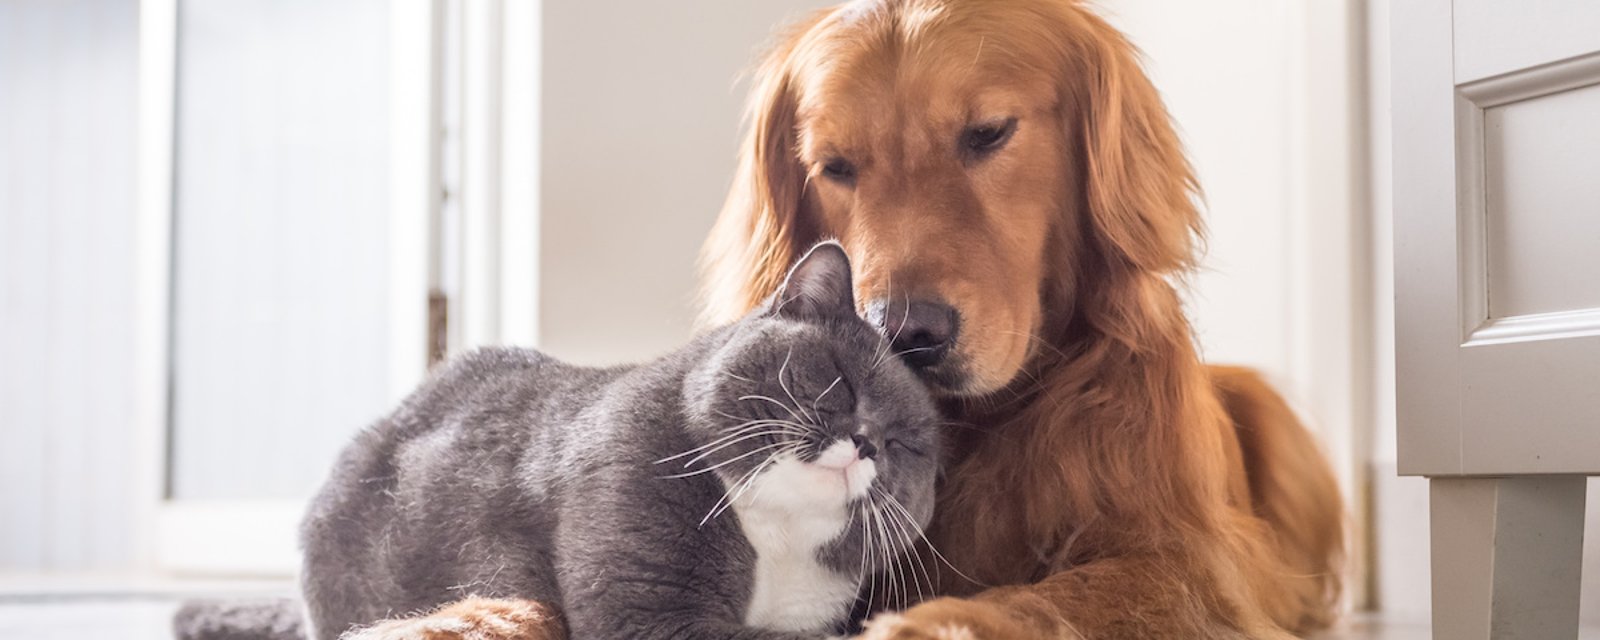 Entente entre chien et chat: 5 conseils pour une cohabitation harmonieuse